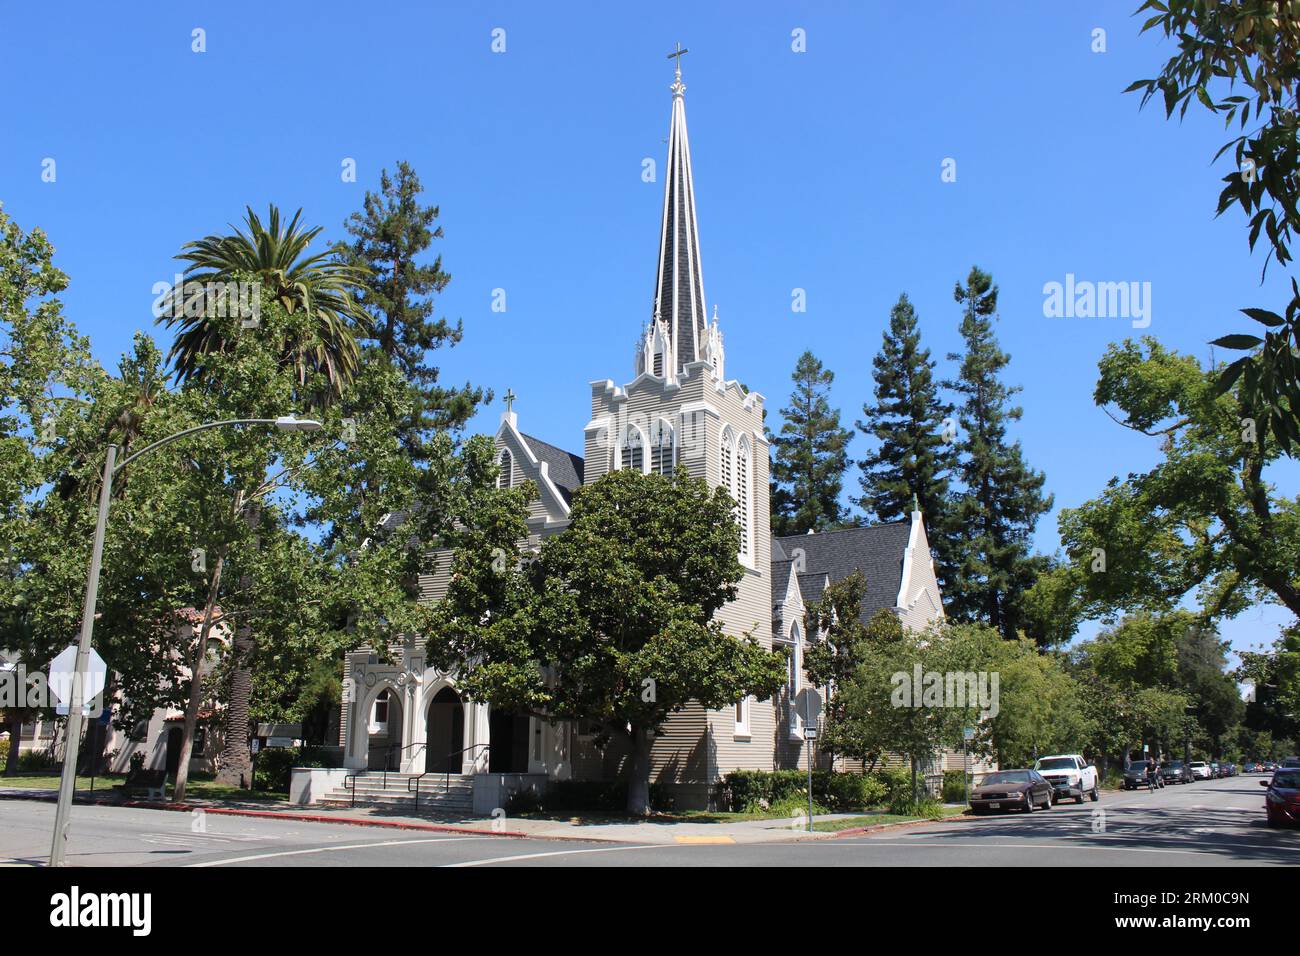 St. Église catholique romaine Thomas d'Aquin construite en 1901, conçue par Shea & Shea, Palo Alto, Californie Banque D'Images